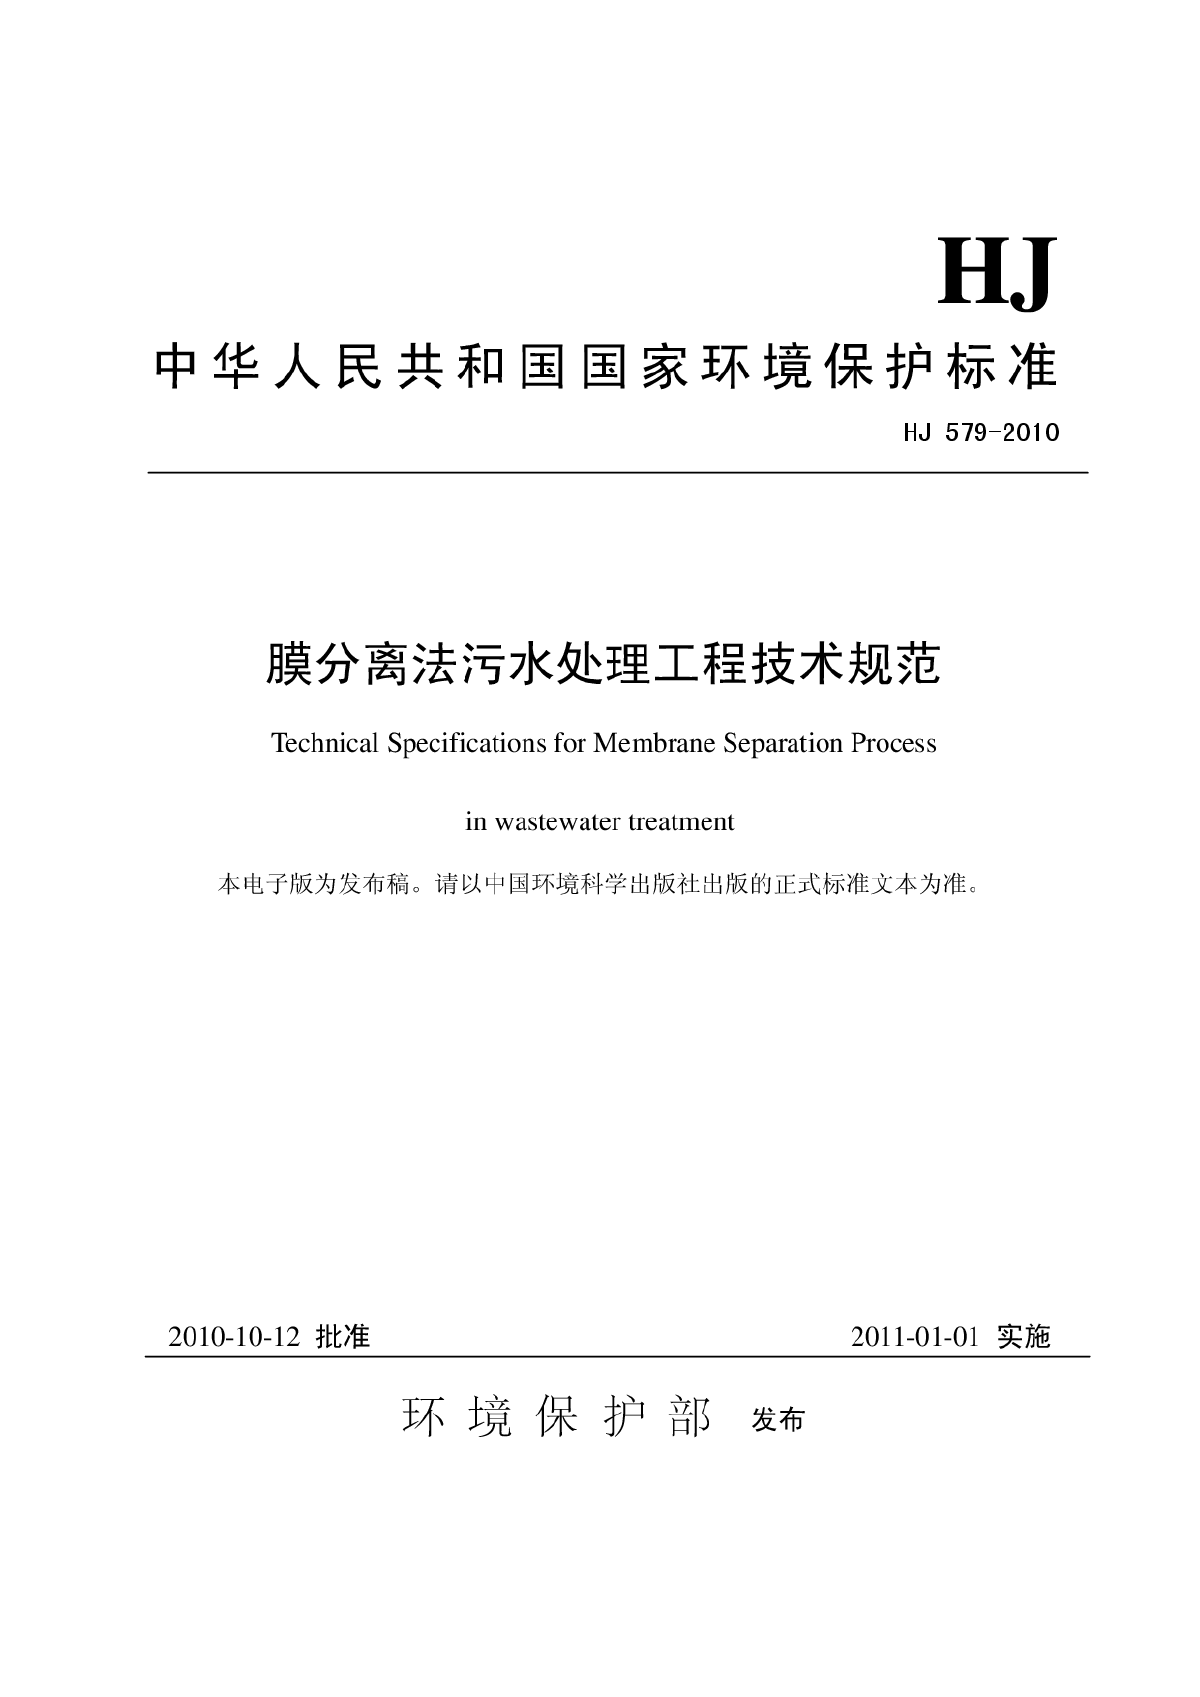 《膜分离法污水处理工程技术规范》(HJ579-2010)